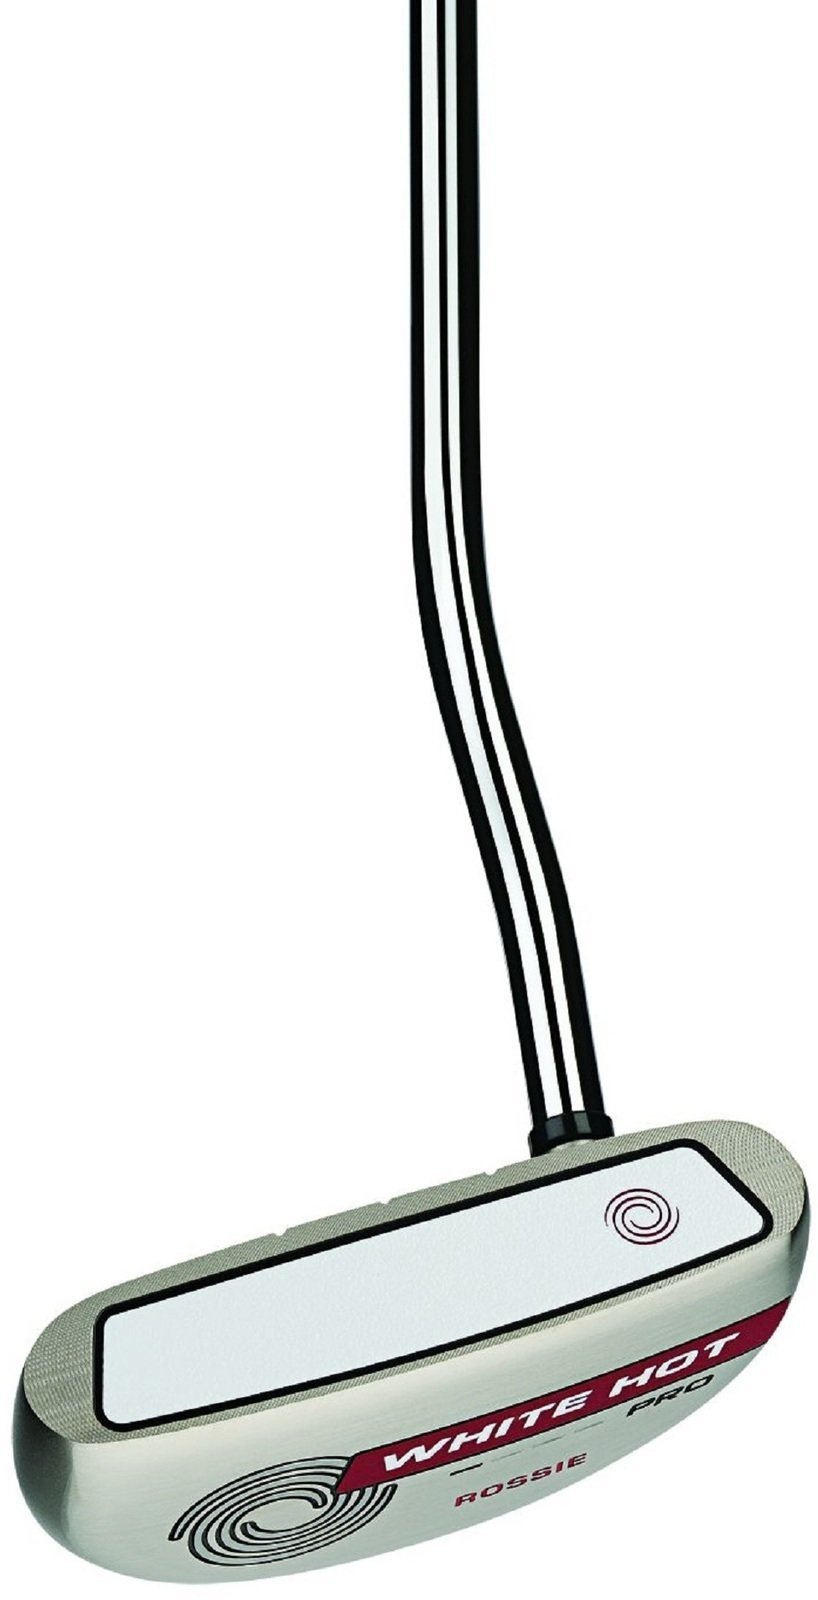 Palo de Golf - Putter Odyssey White Hot Pro 2.0 Rossie Mano derecha 35''